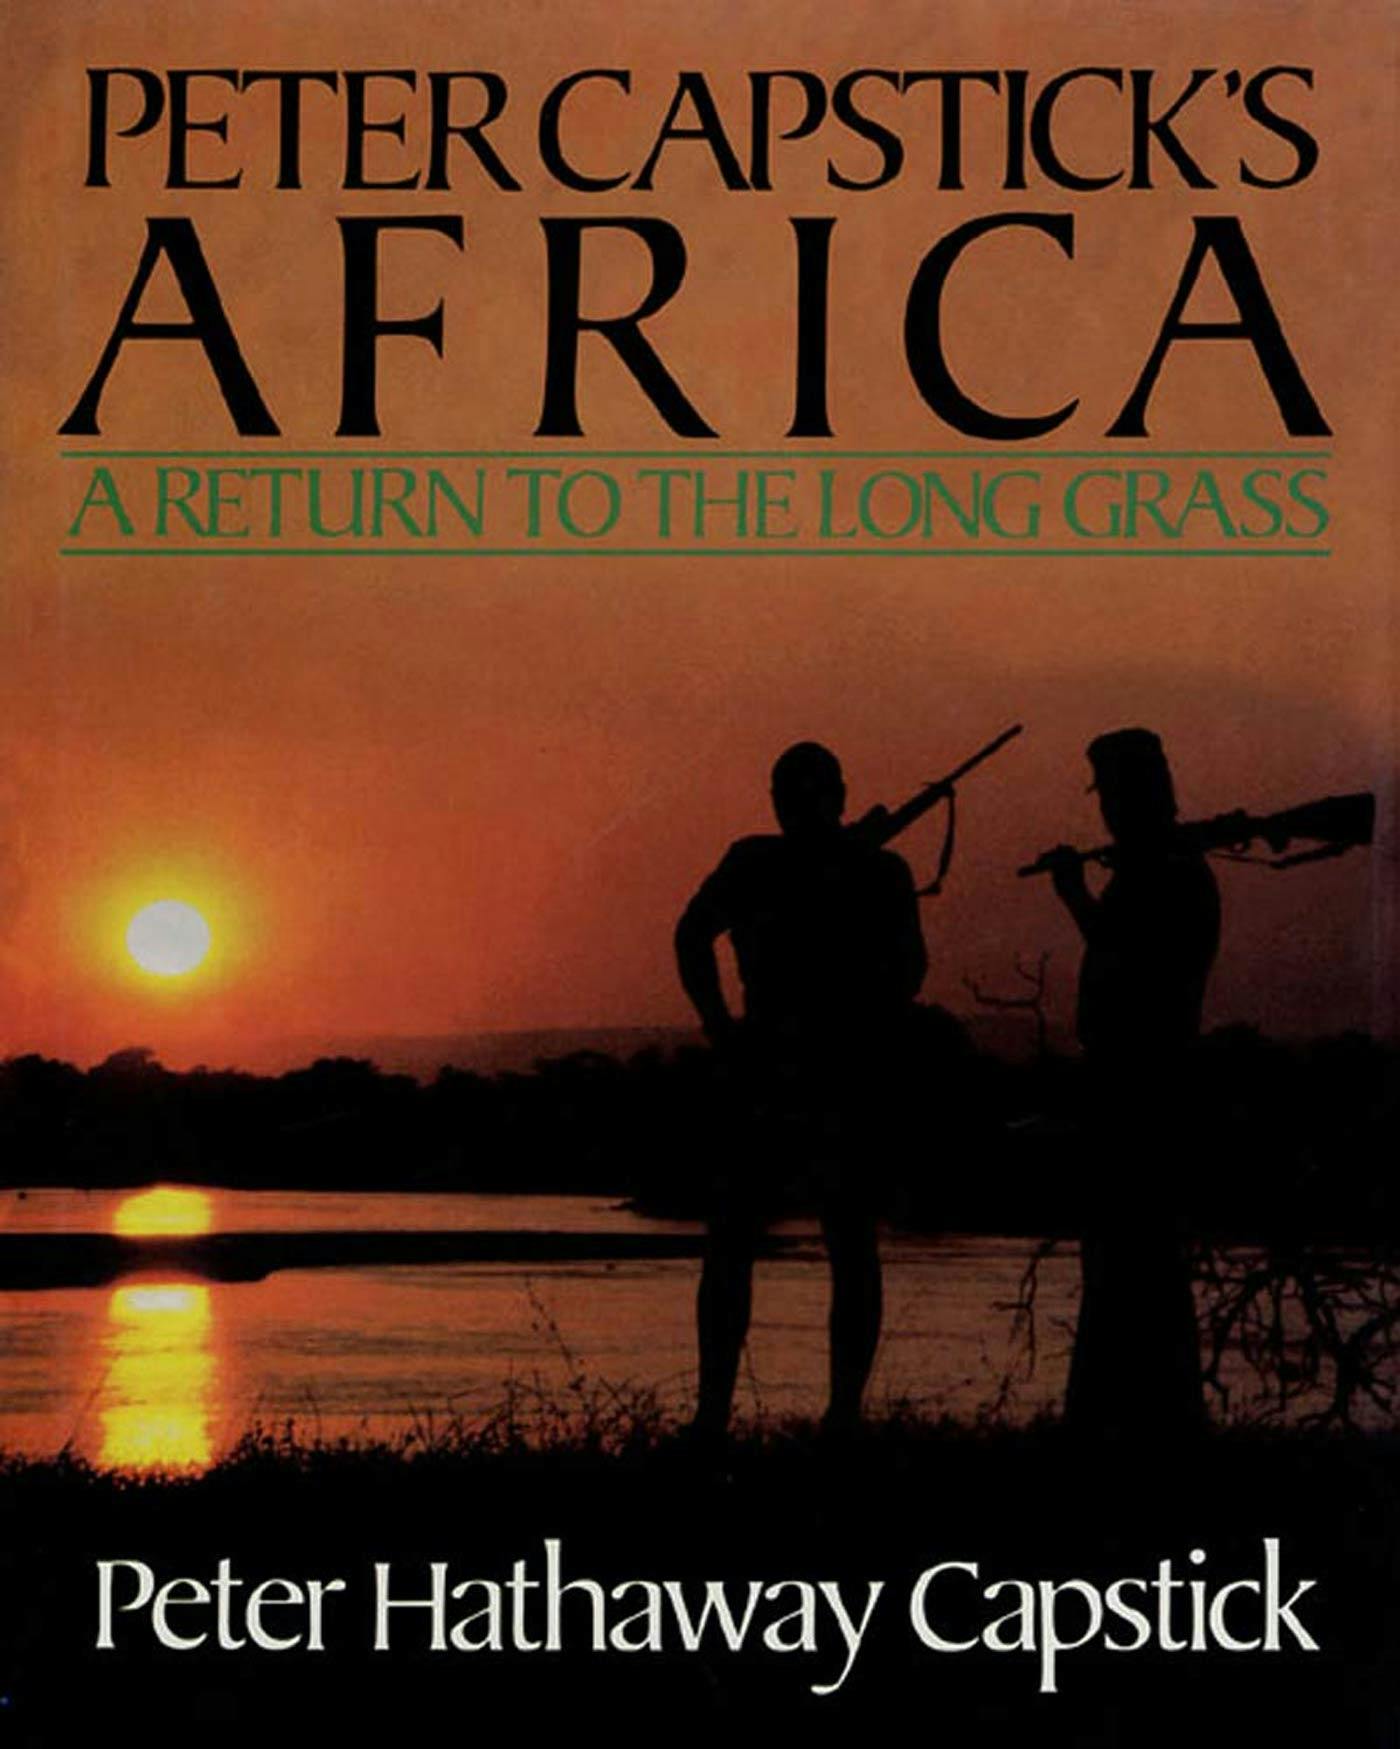 Peter Capsticks Africa picture pic